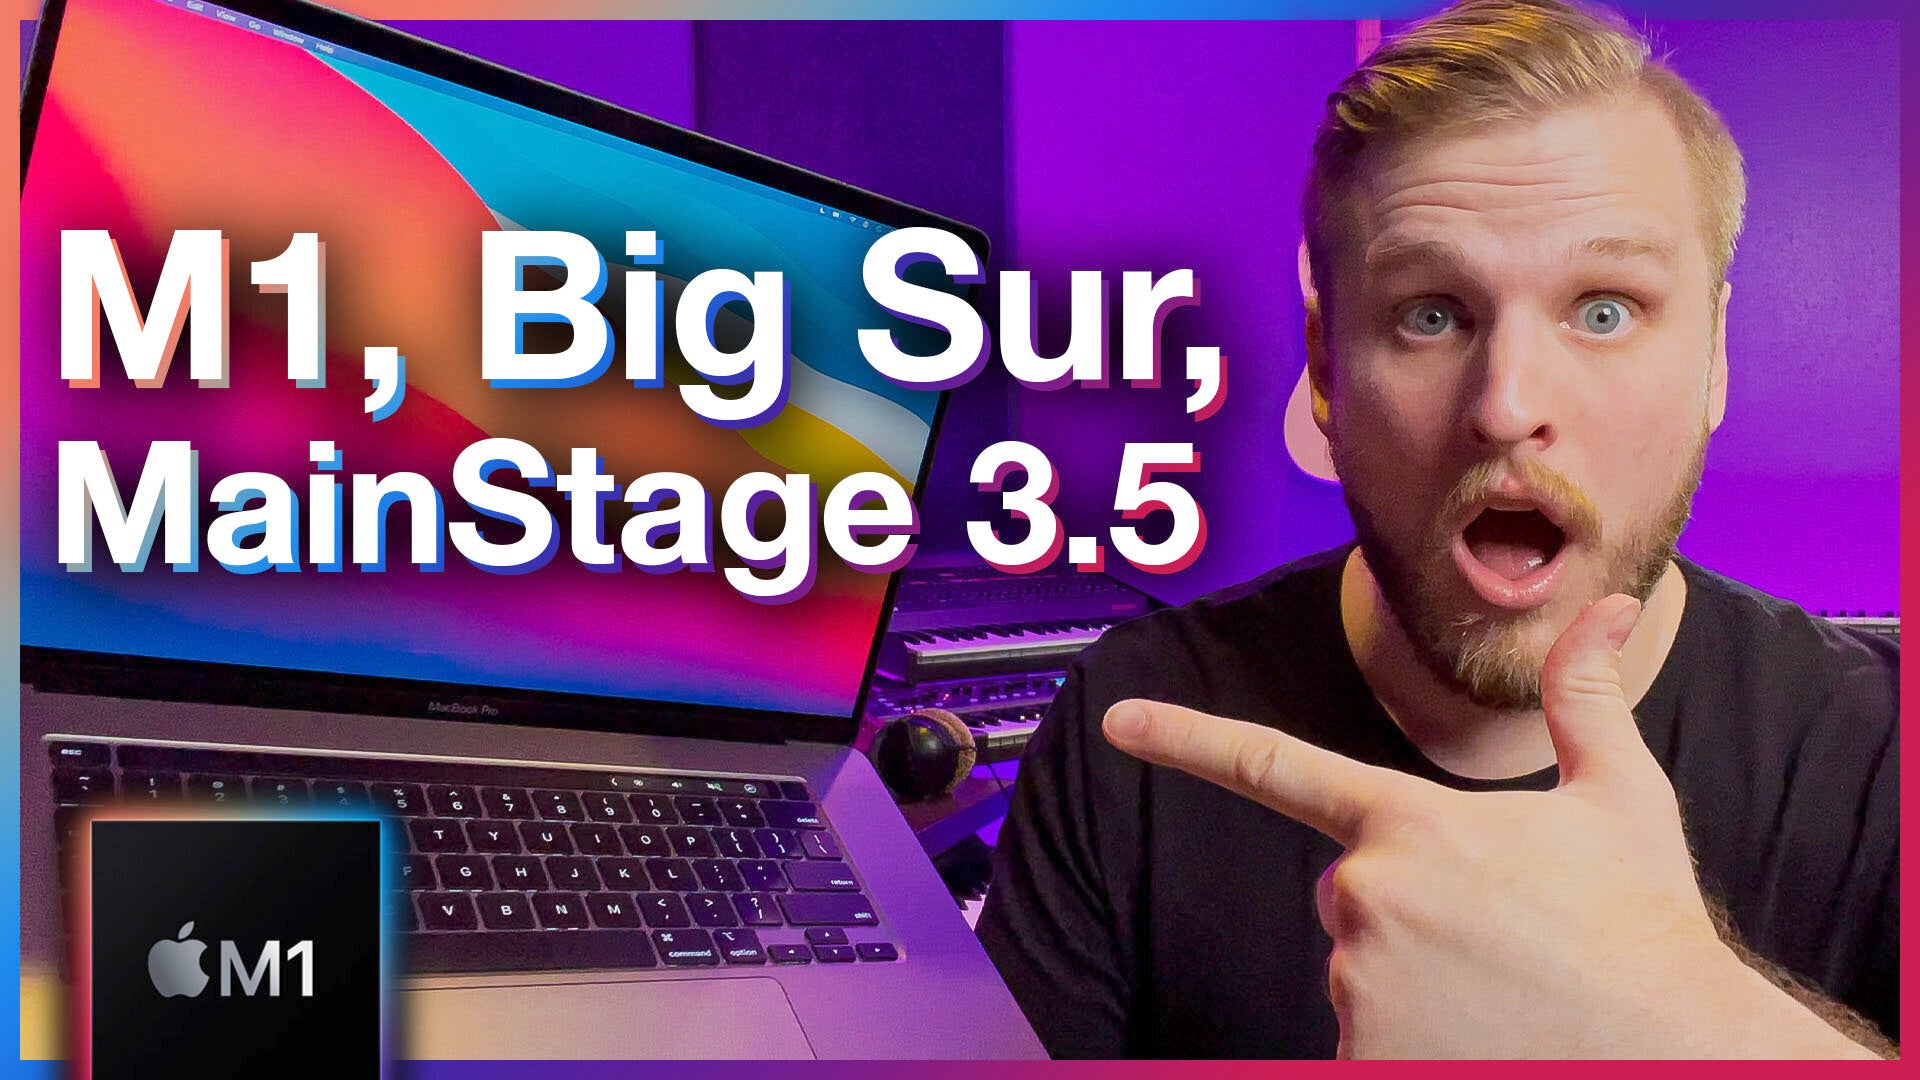 HUGE UPDATE! New MacBooks, Big Sur, M1 Chip, MainStage Update 3.5!